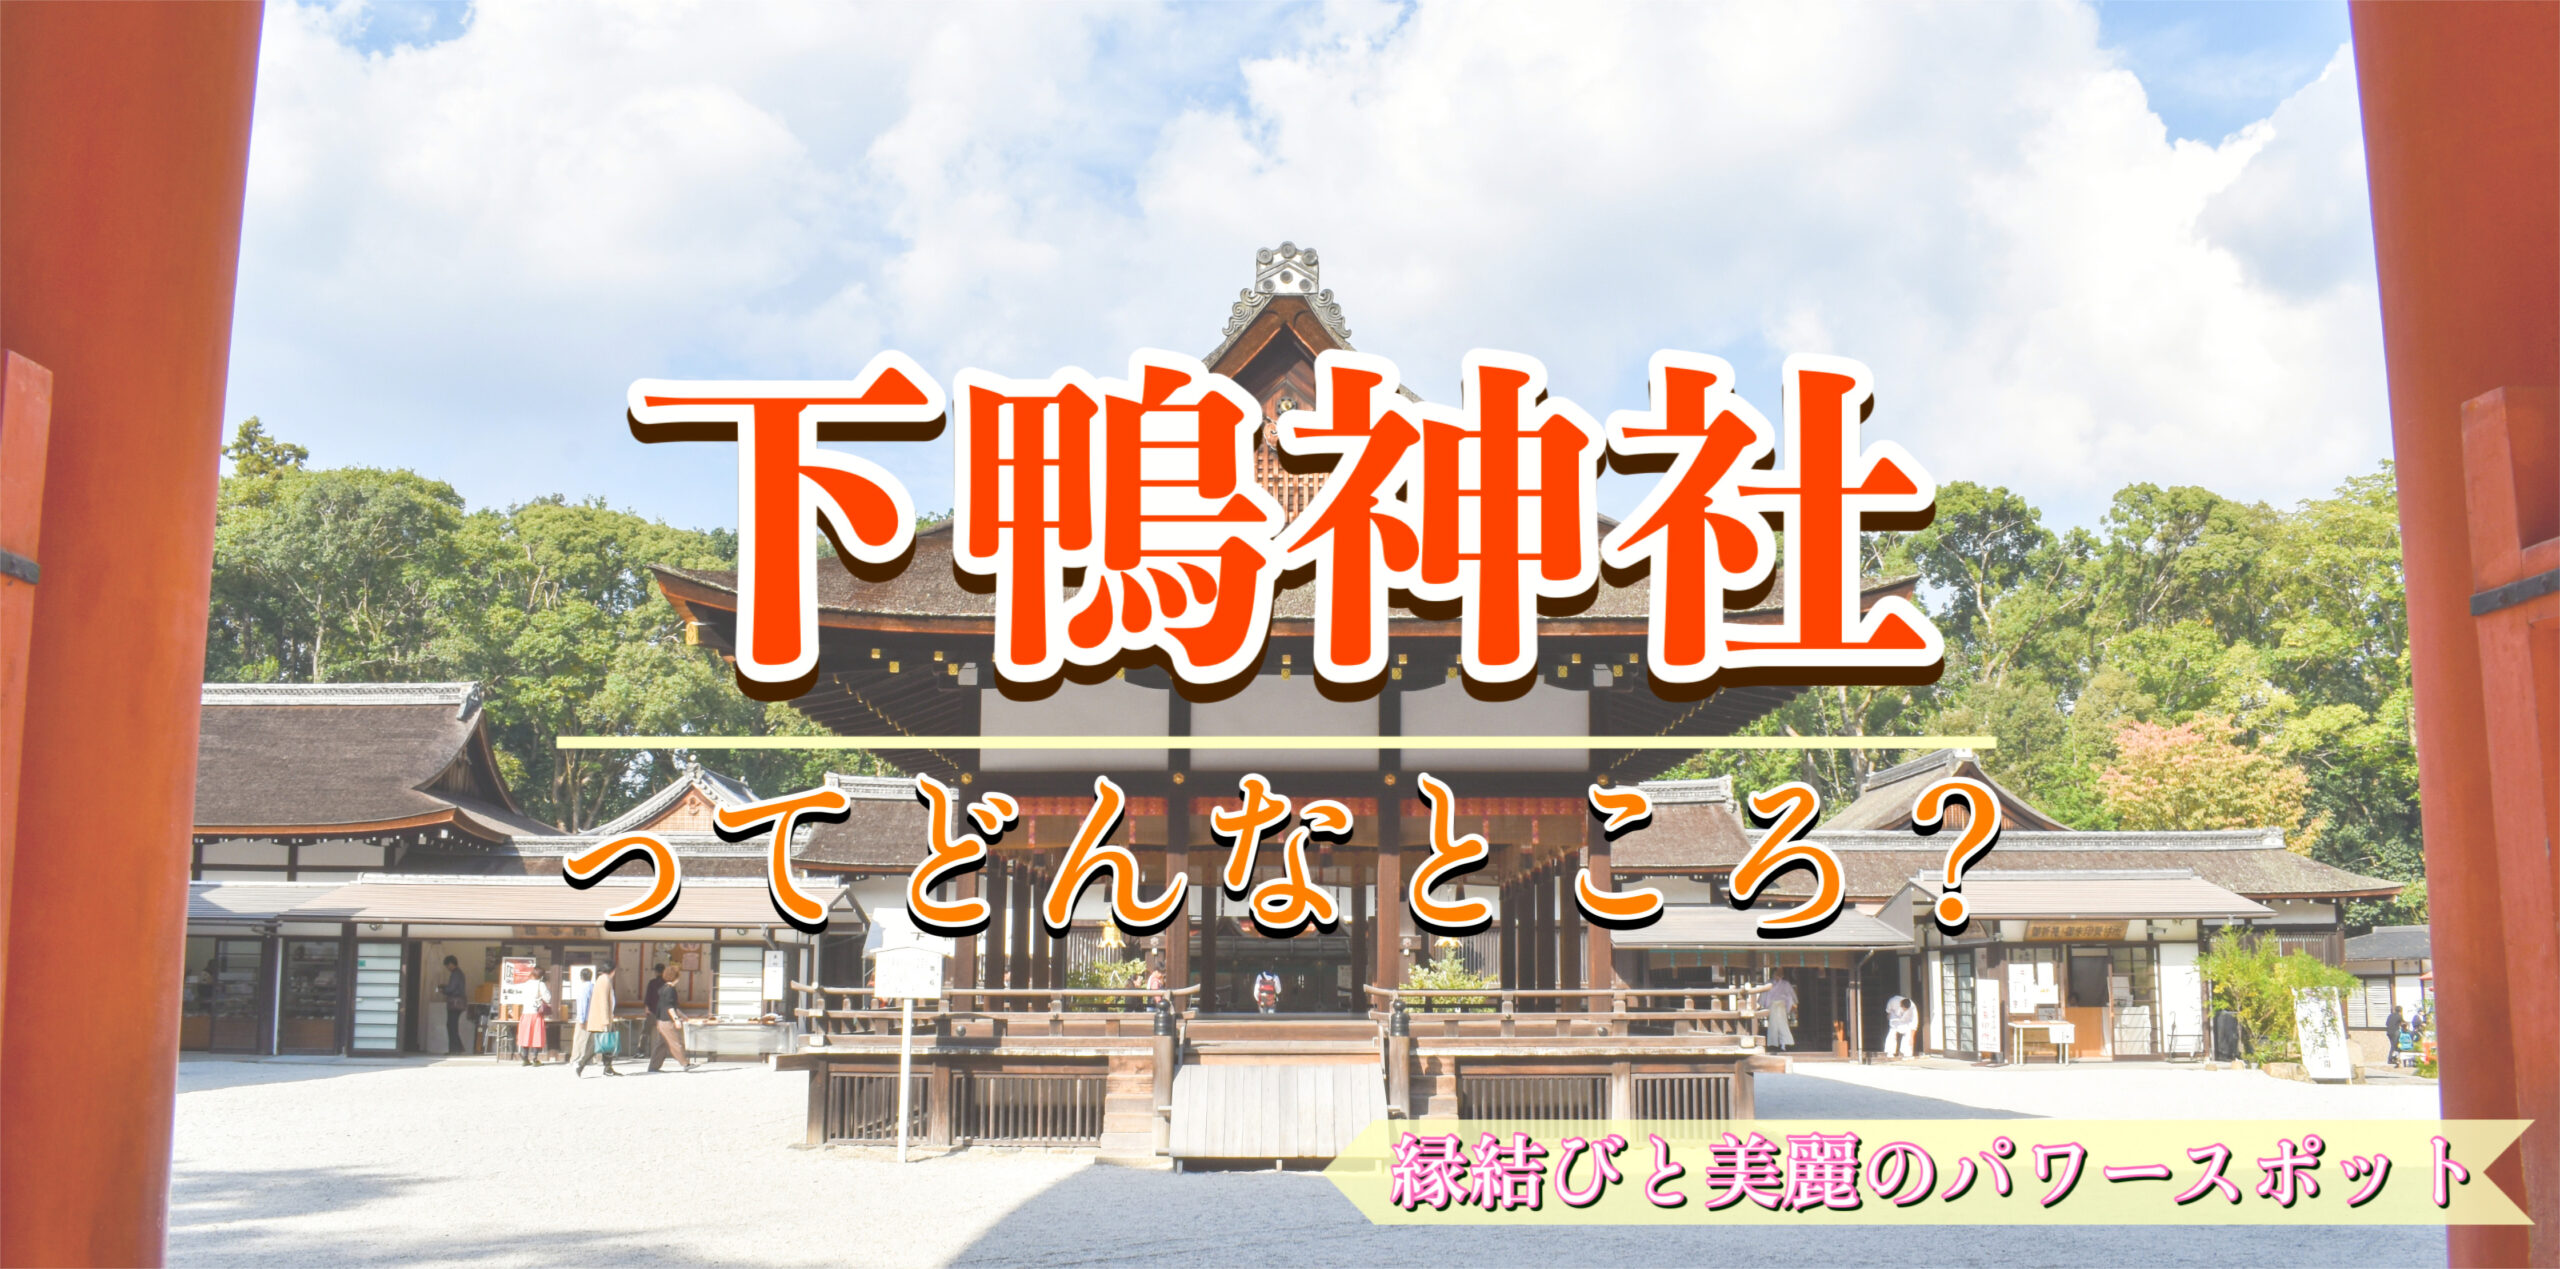 縁結び・女性守護・京都最古の森と歴史_見どころだらけのパワースポット_下鴨神社のご利益・拝観料・アクセス